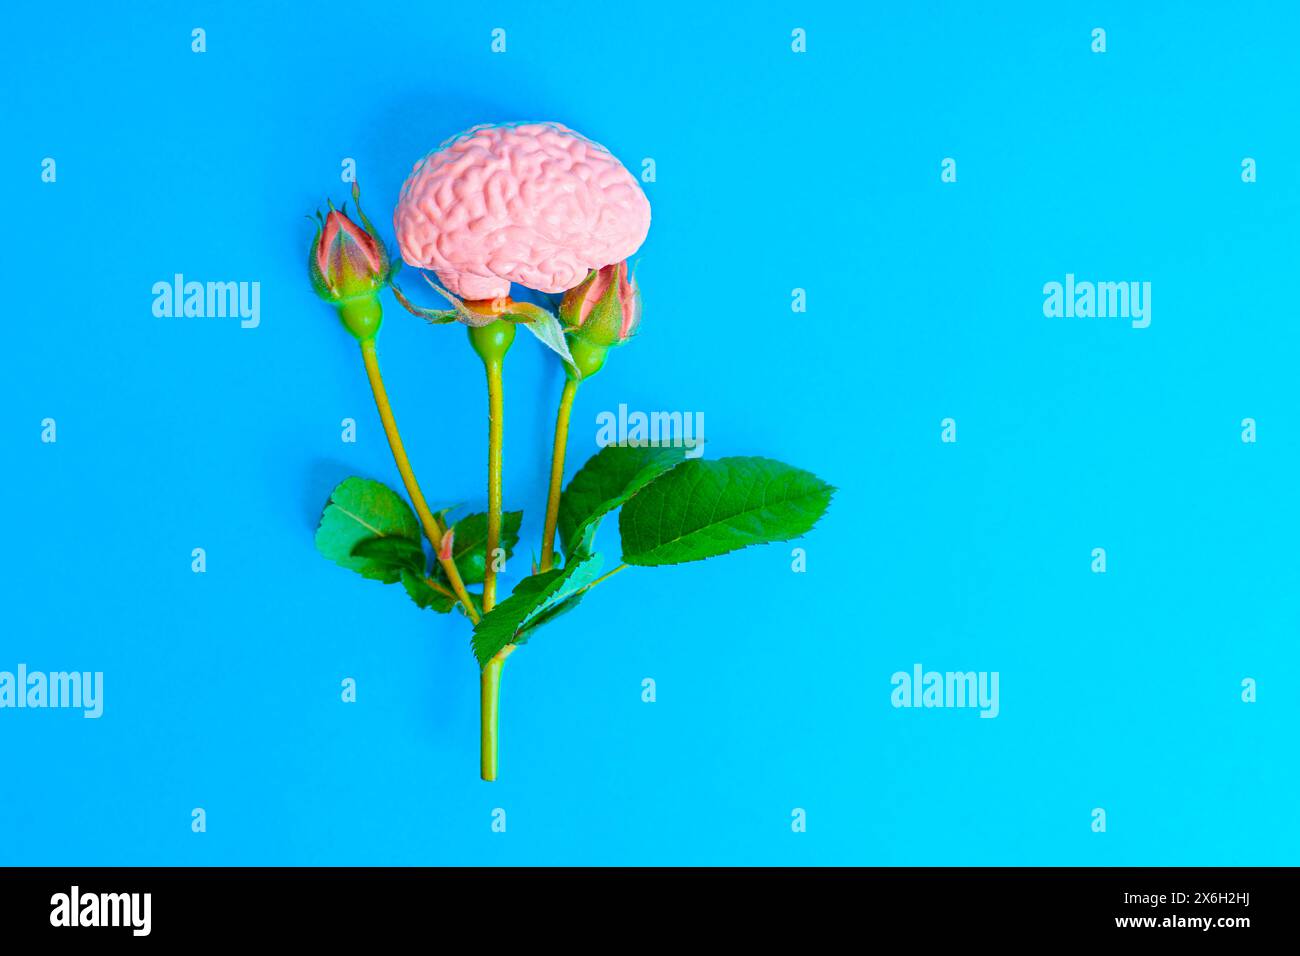 Delicato ramo di rosa adornato da un cervello umano al posto di uno dei suoi germogli. Natura e intelligenza. Foto Stock